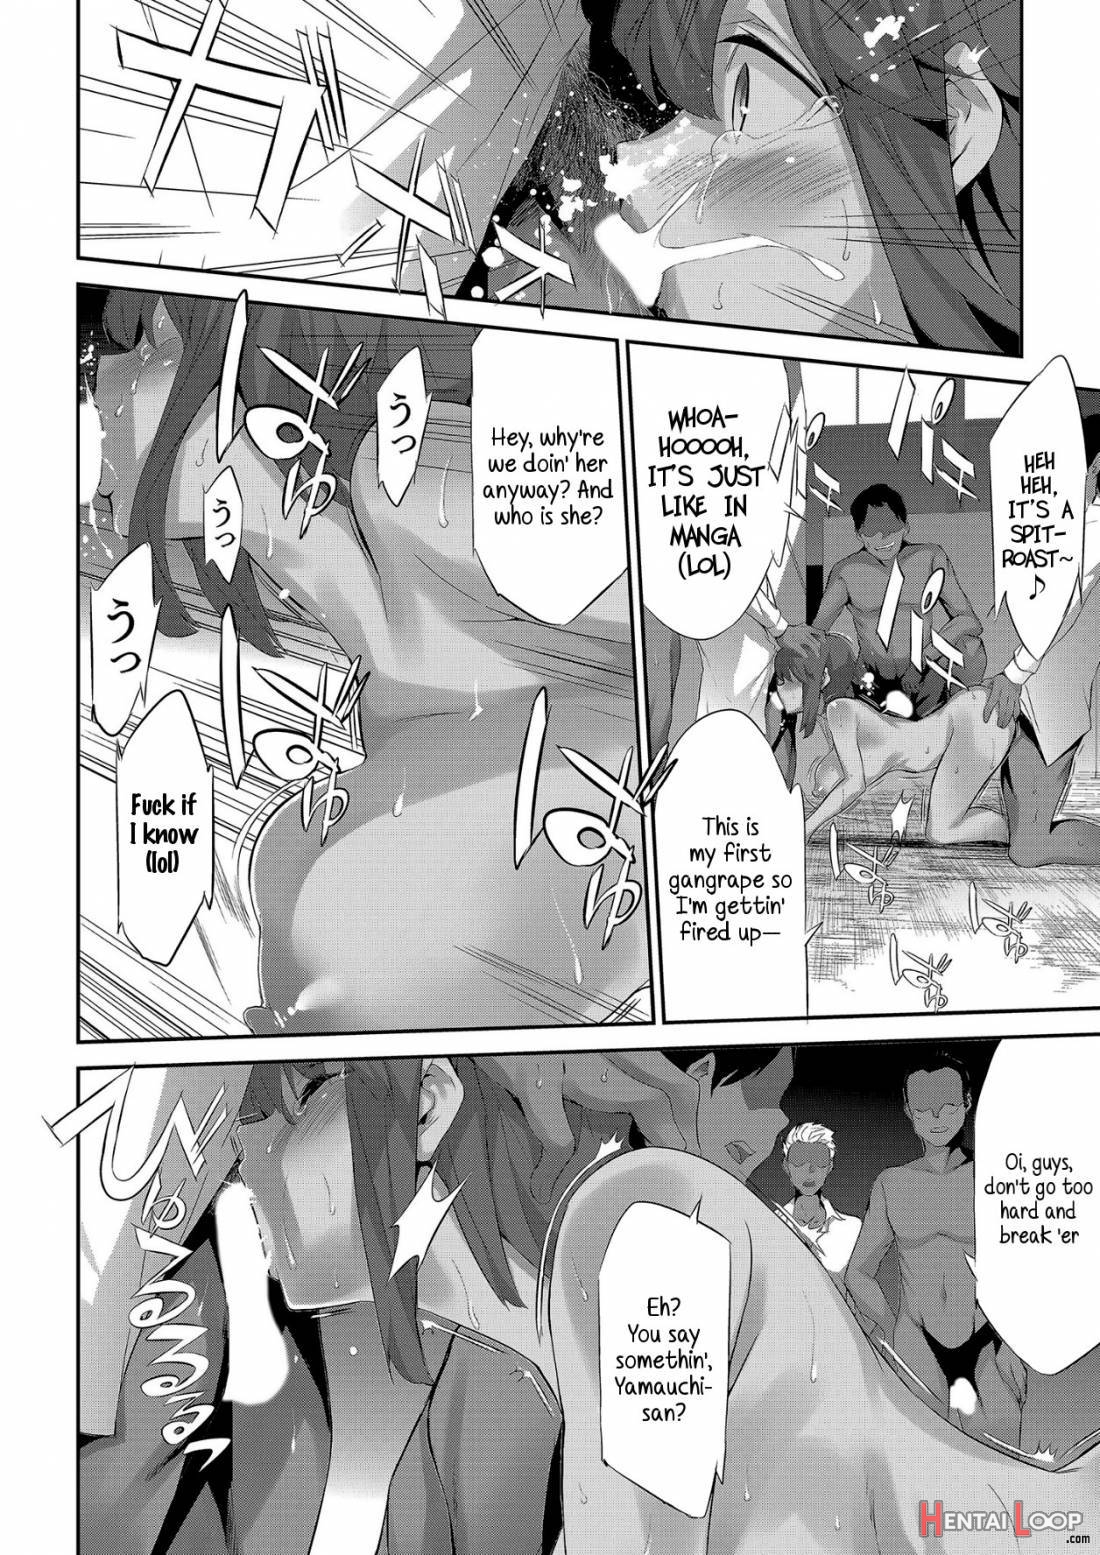 Himitsu 05 “Gomen ne” page 9